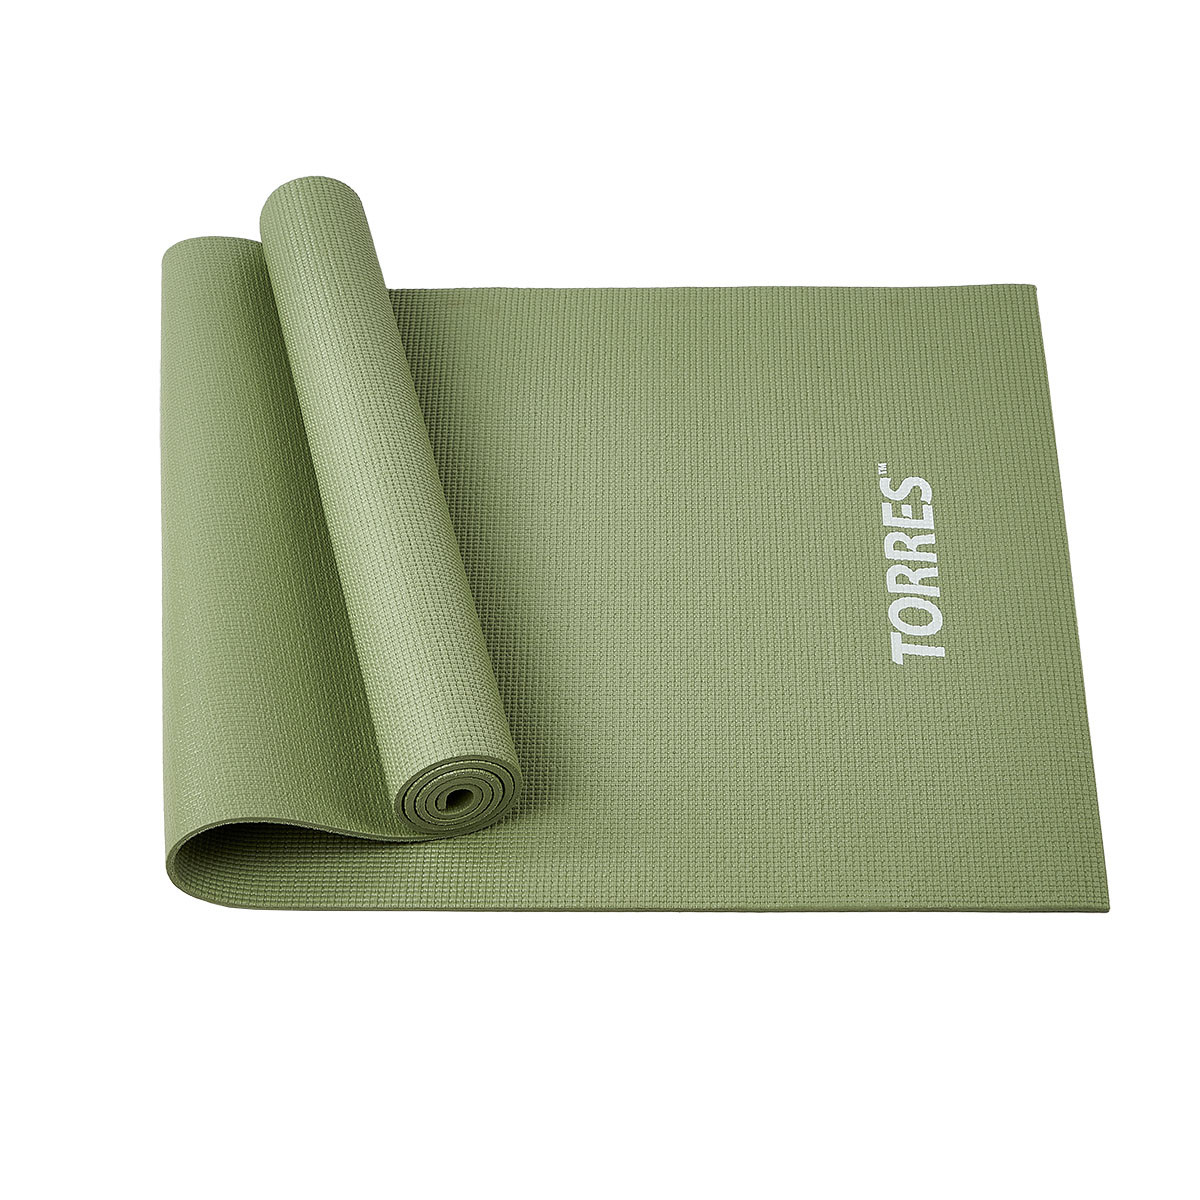 Коврик для йоги "TORRES Relax 6" арт.YL12236M, PVC 6 мм, нескользящее покрытие, оливковый